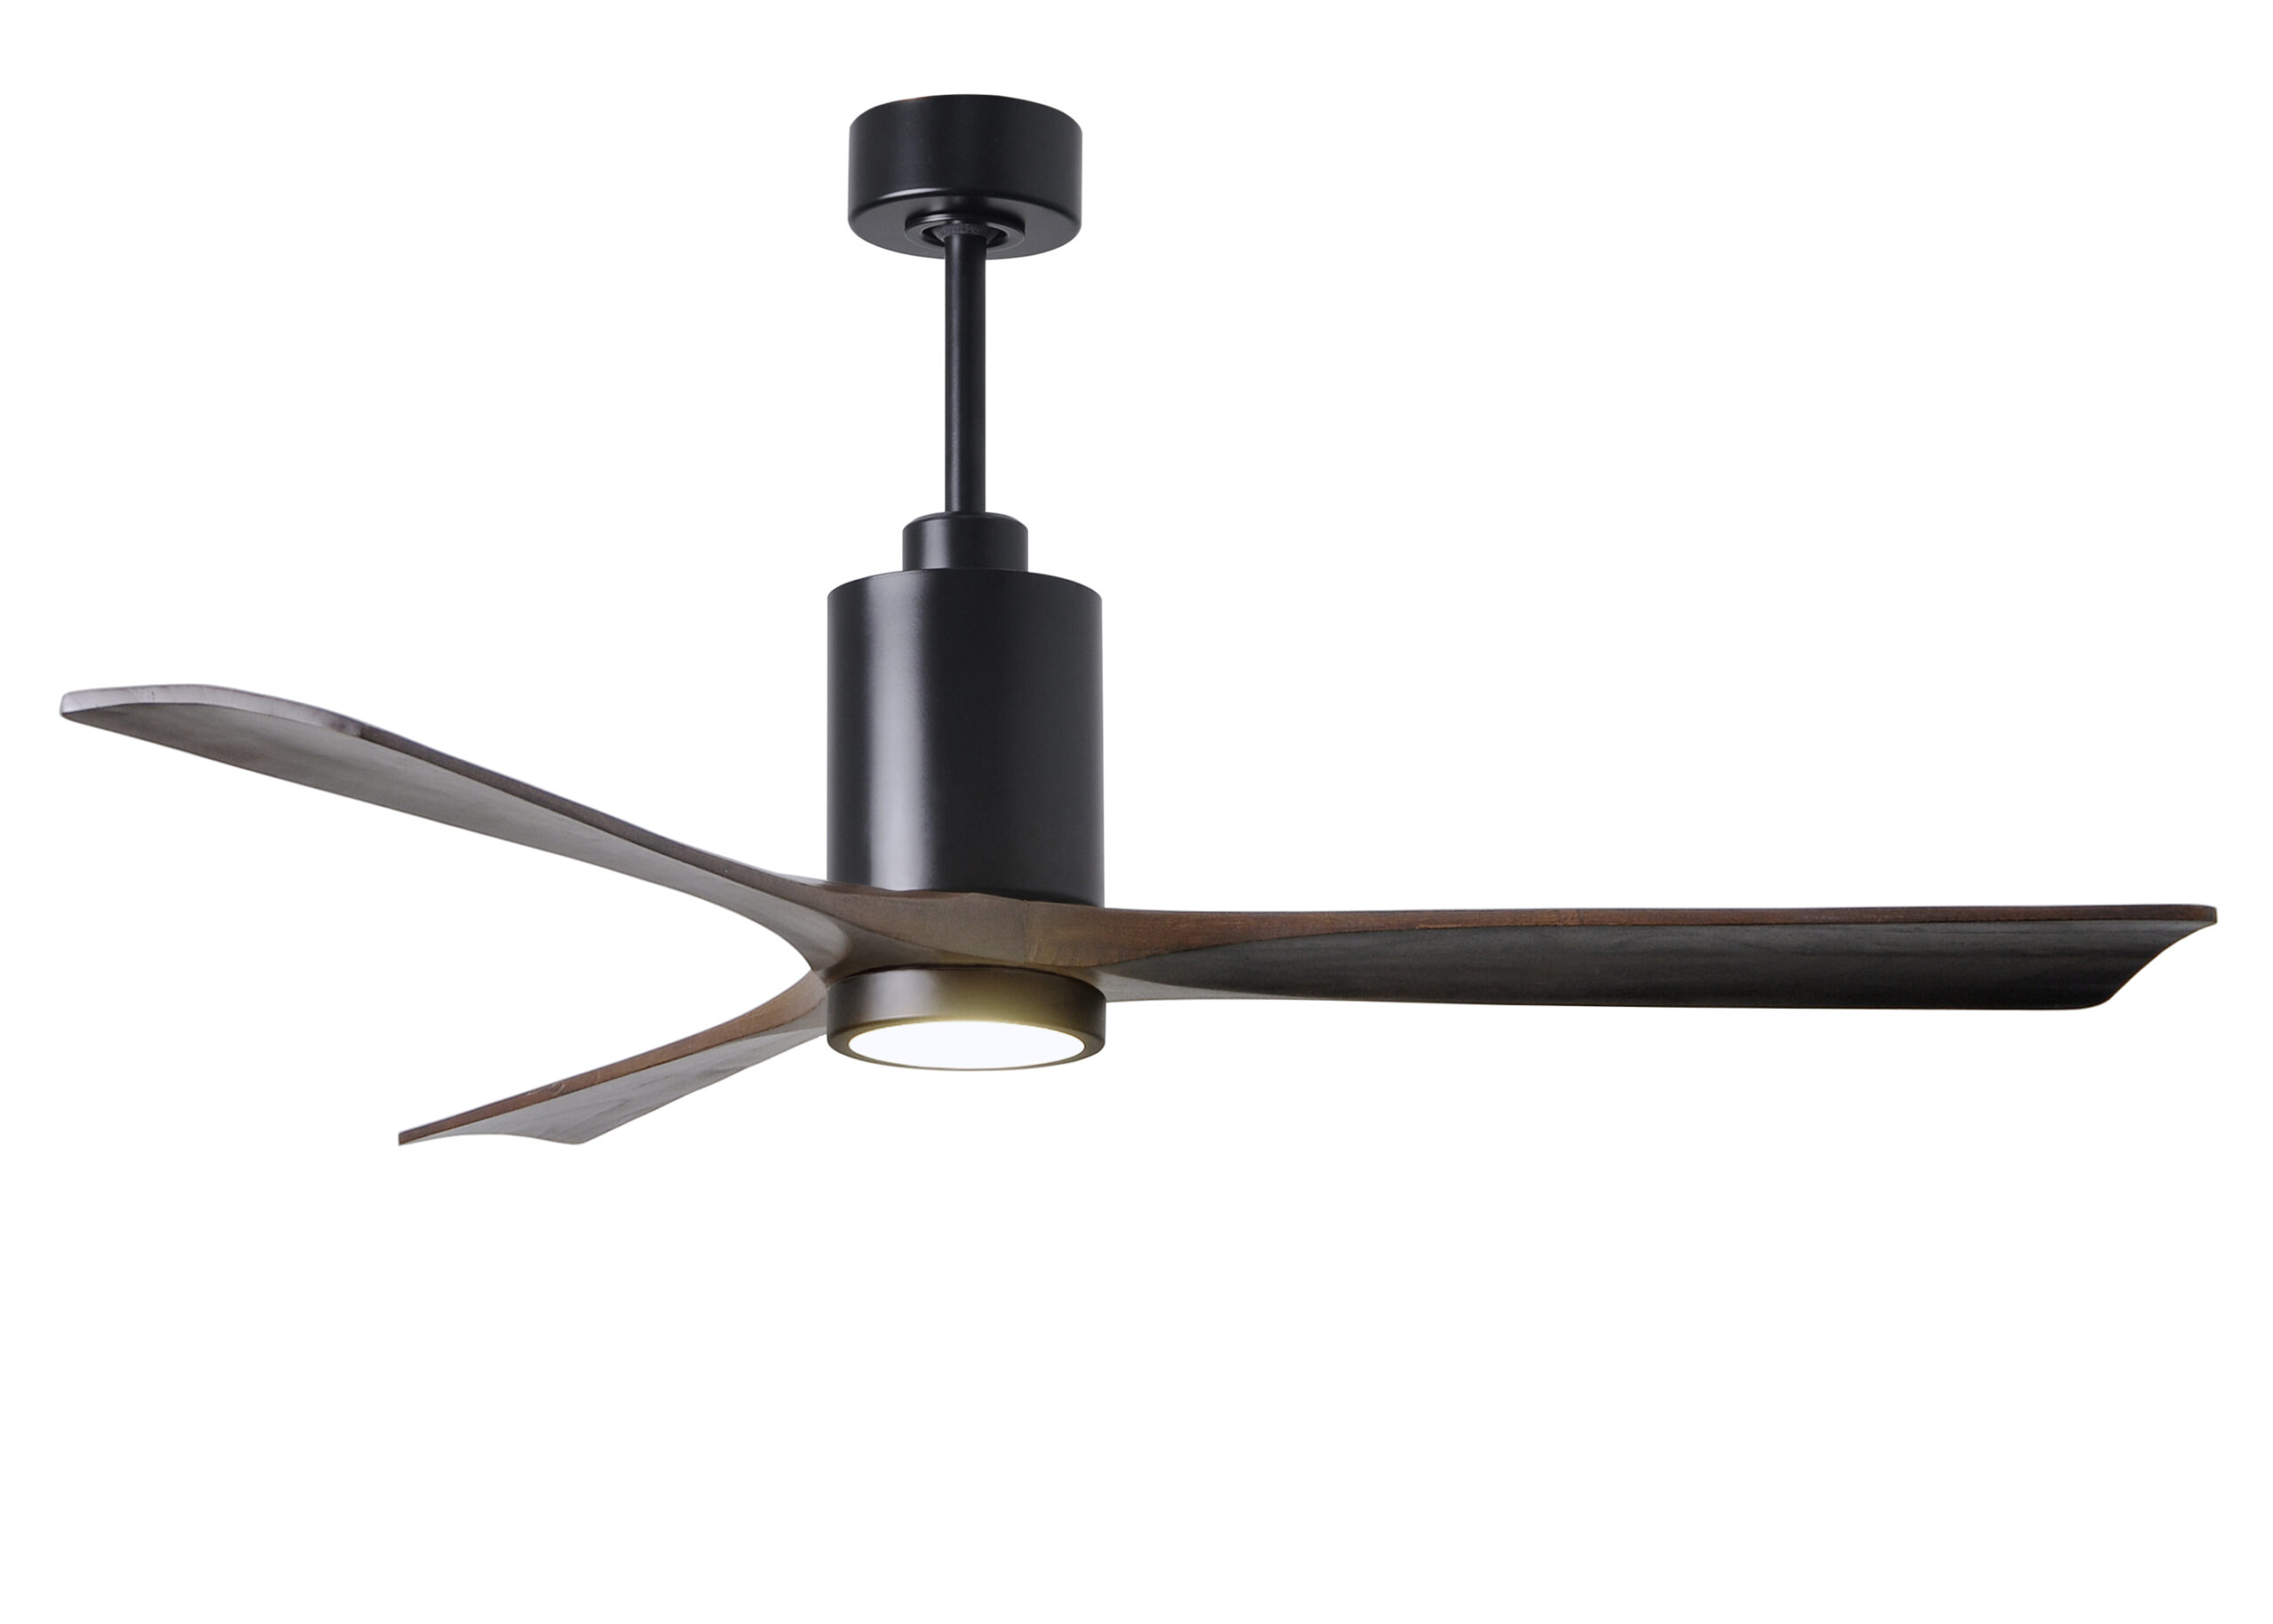 Patrícia-3 6-speed ceiling fan in Matte Black with 60” Walnut blades made by Matthews Fan Company.